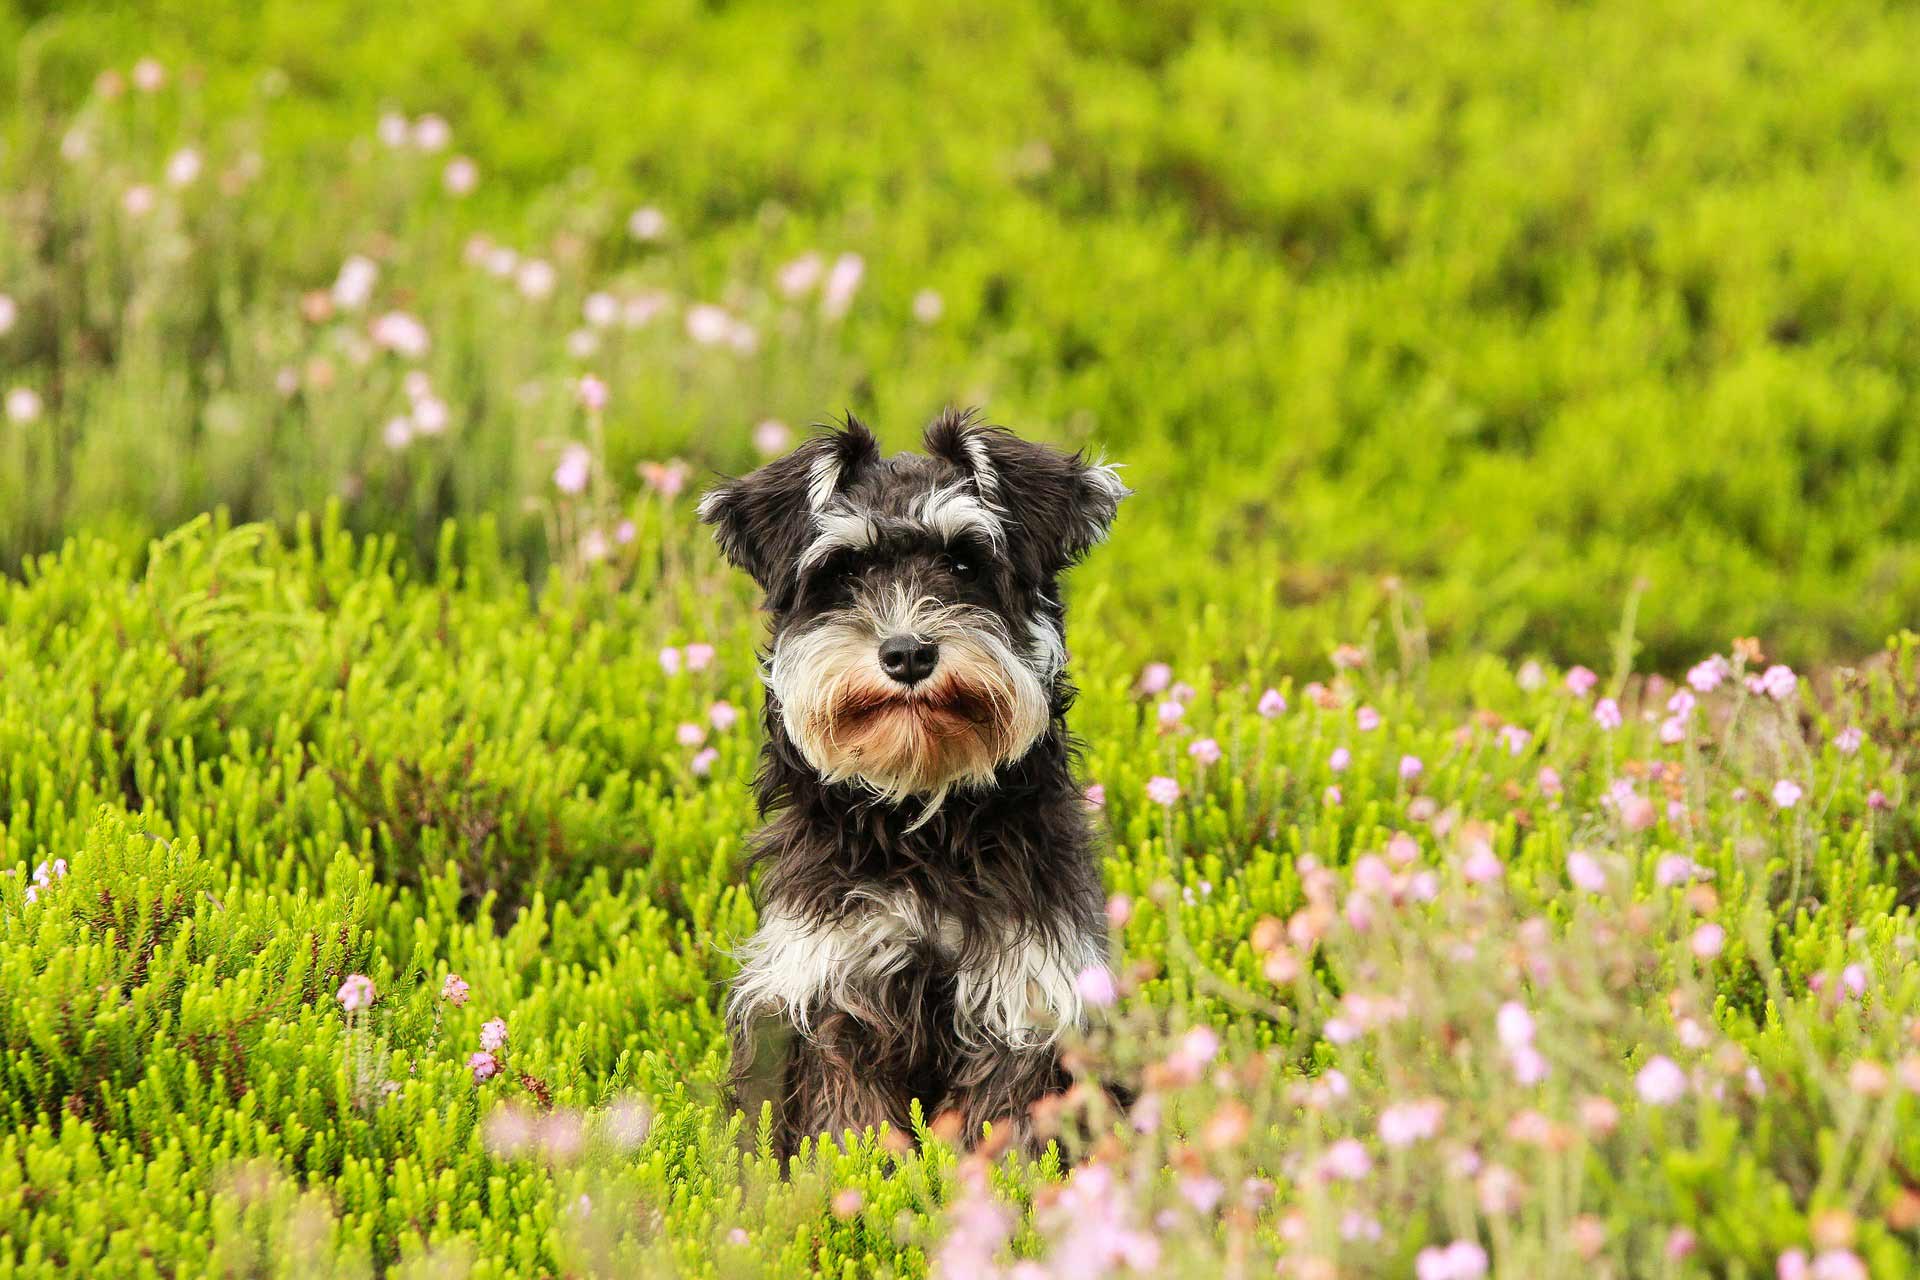 Alergia al polen en los perros: síntomas y tratamiento de la fiebre del heno en los perros